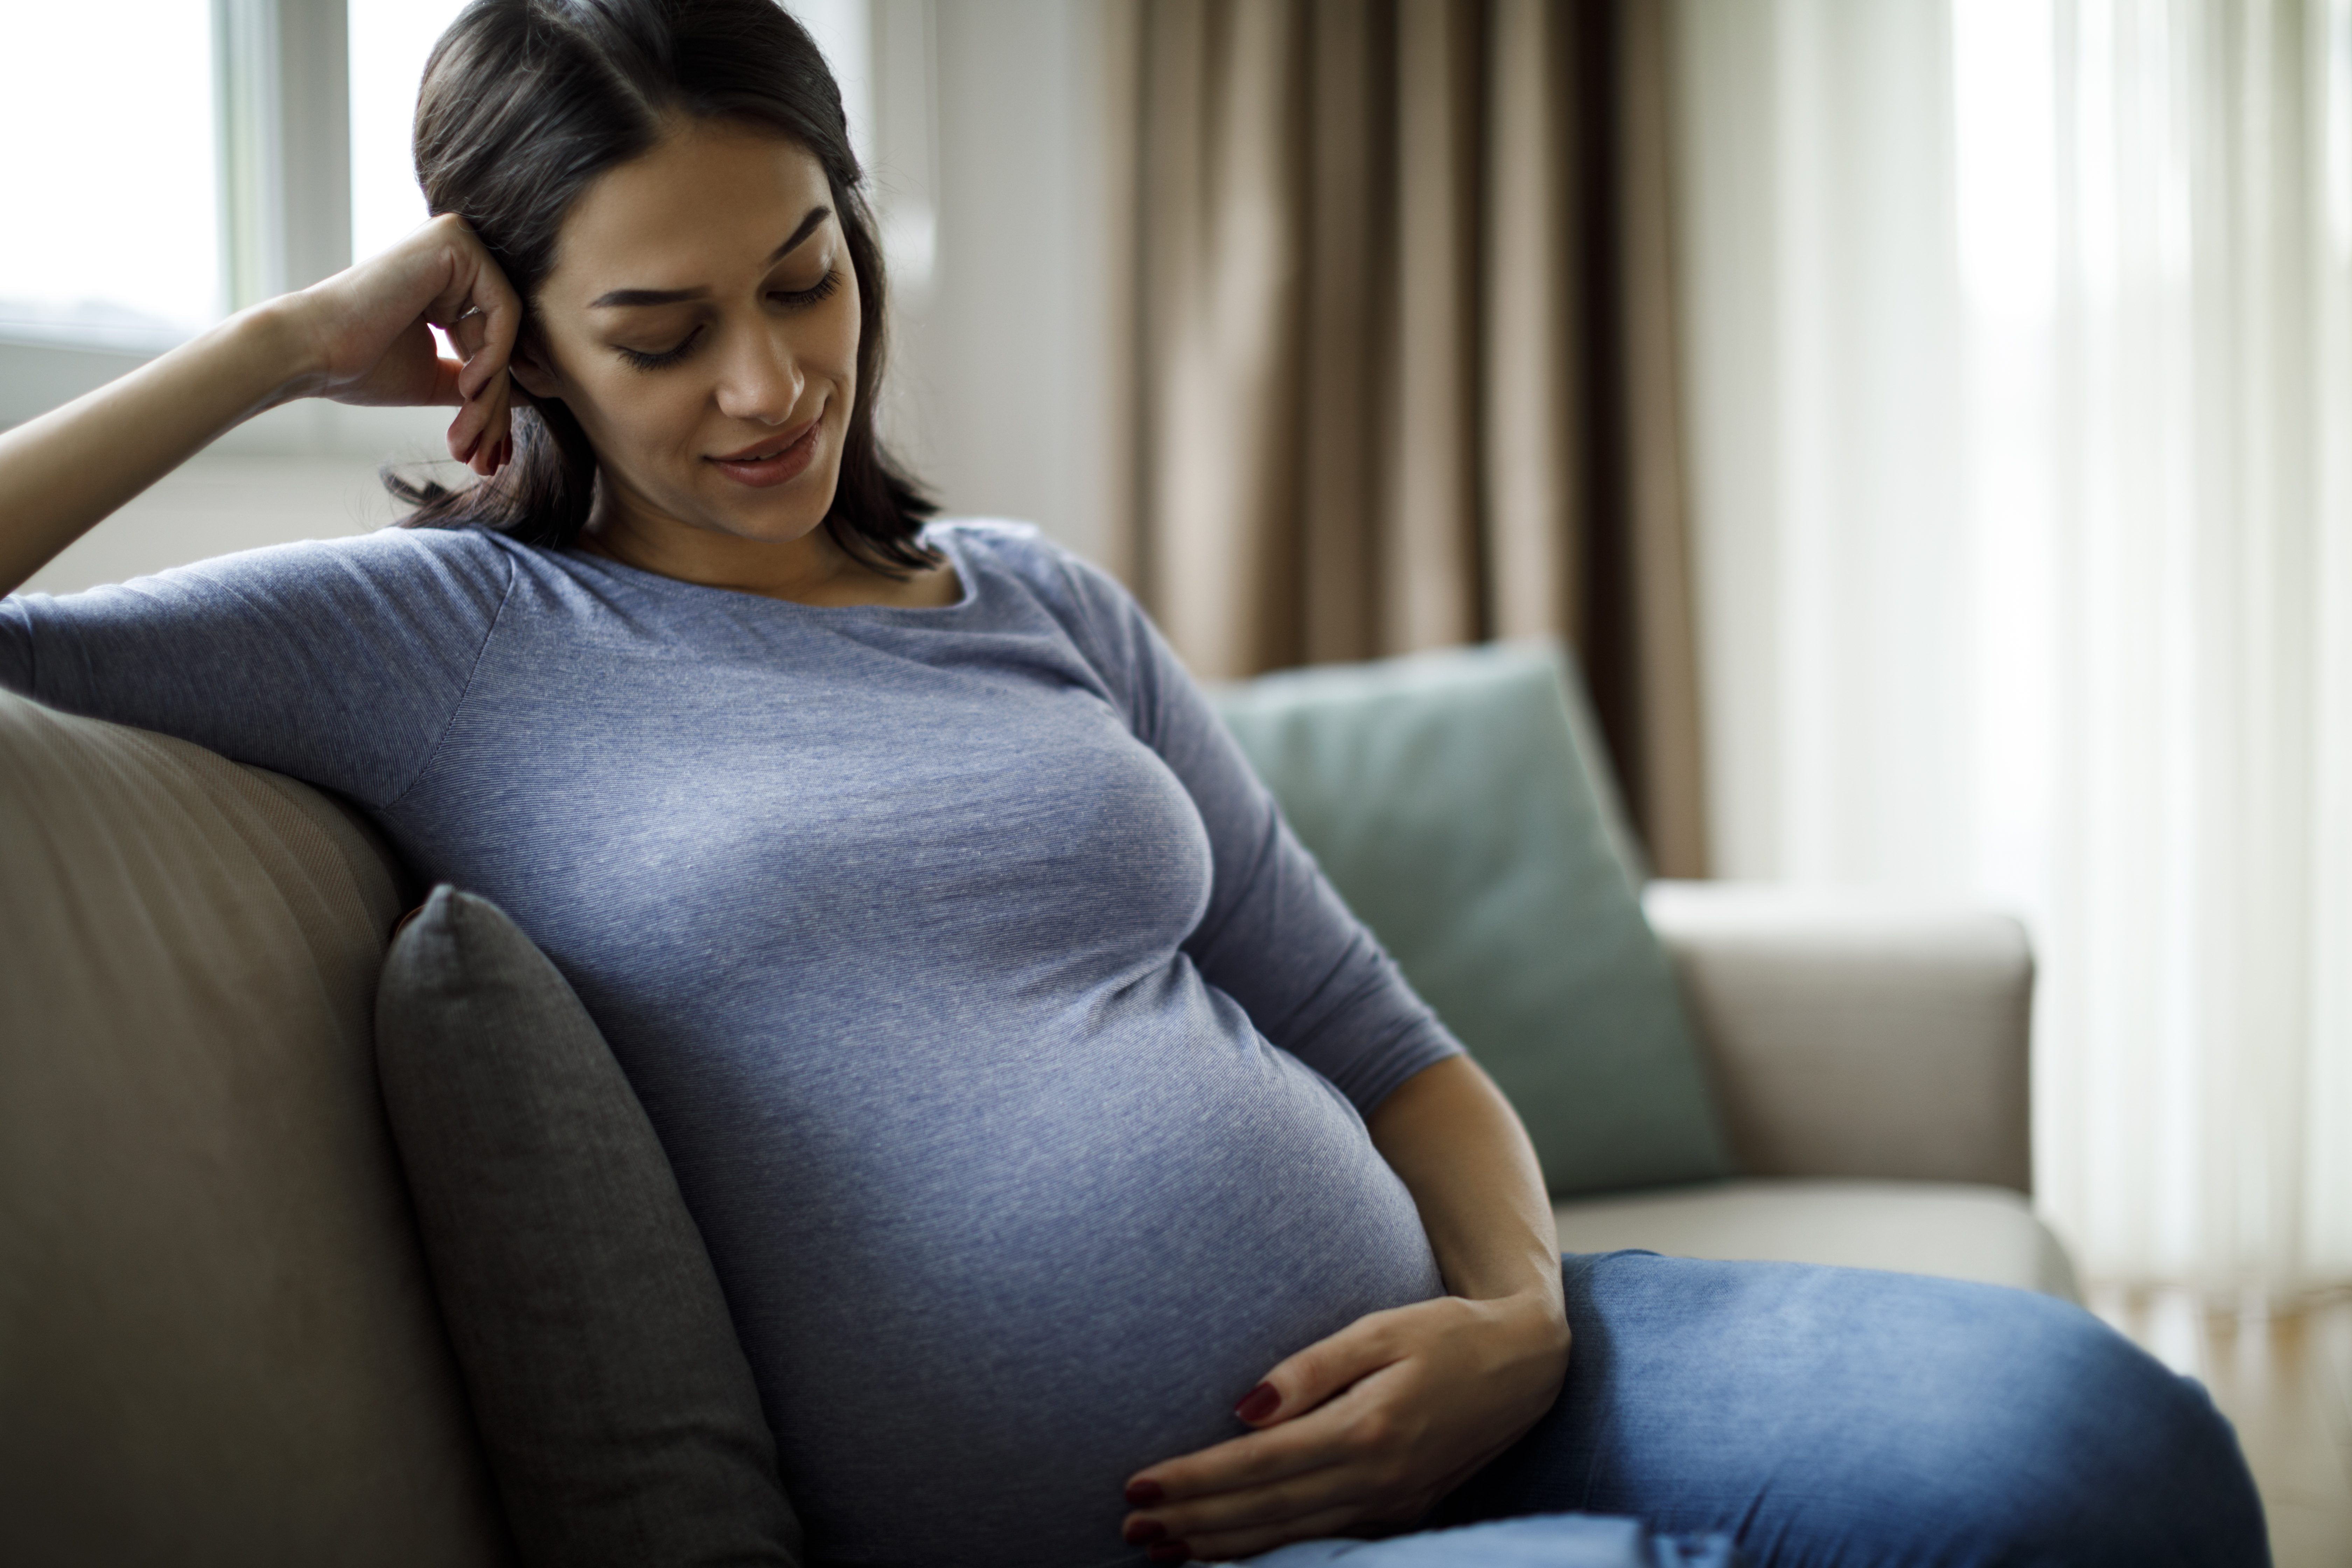 Eine schwangere Frau denkt nach | Quelle: Getty Images